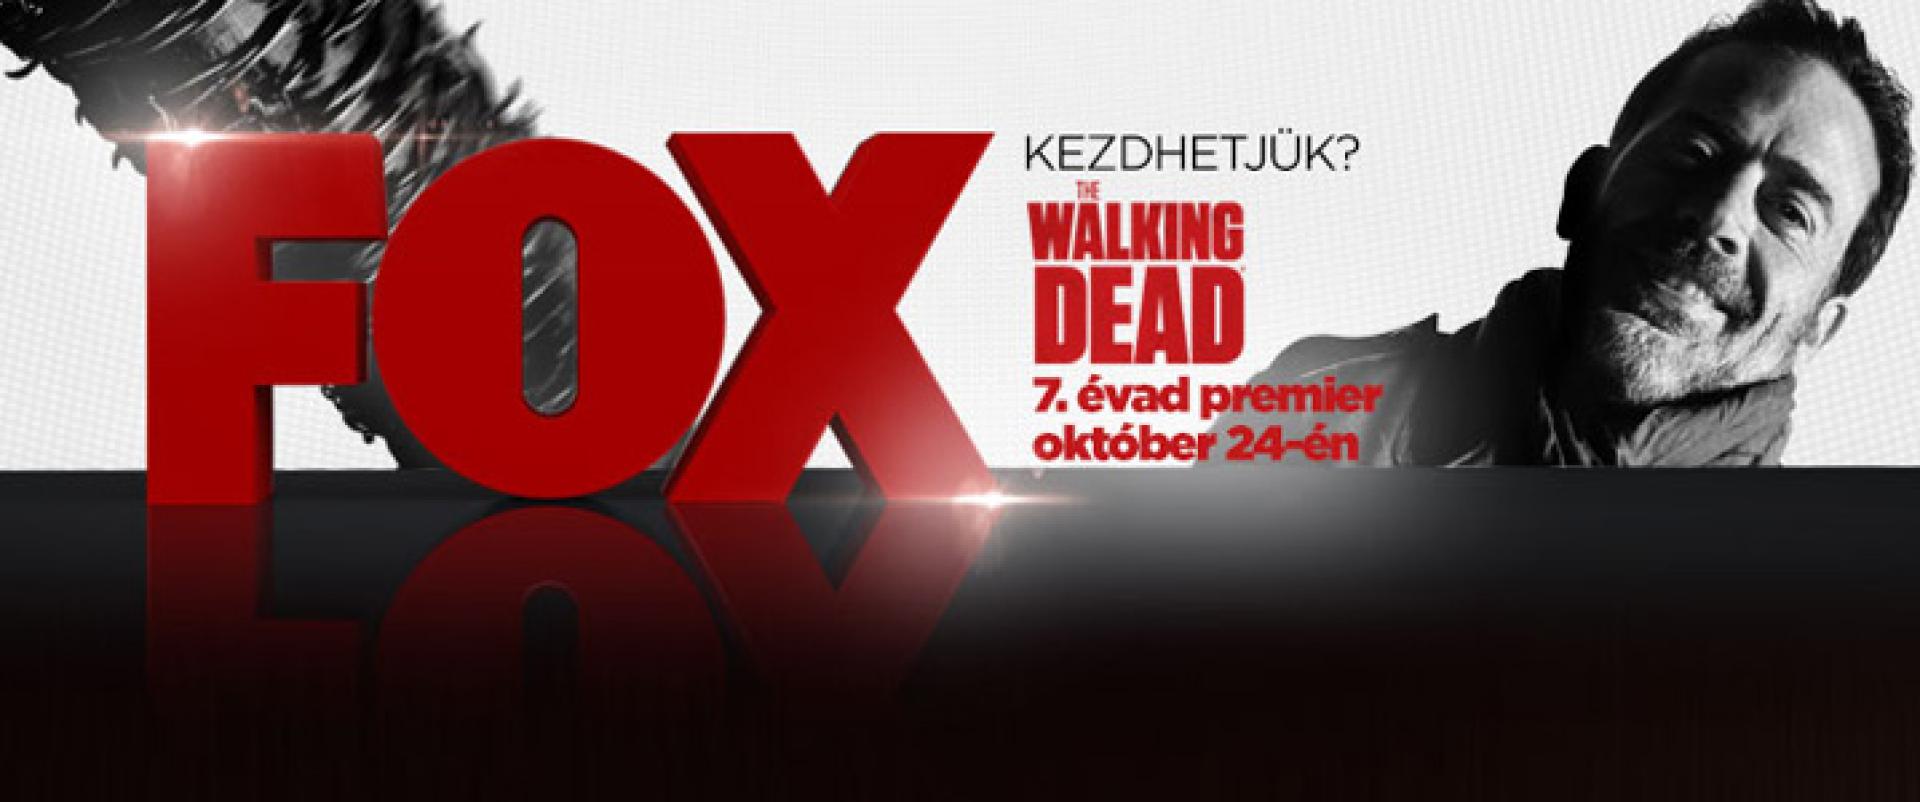 The Walking Dead 7x04